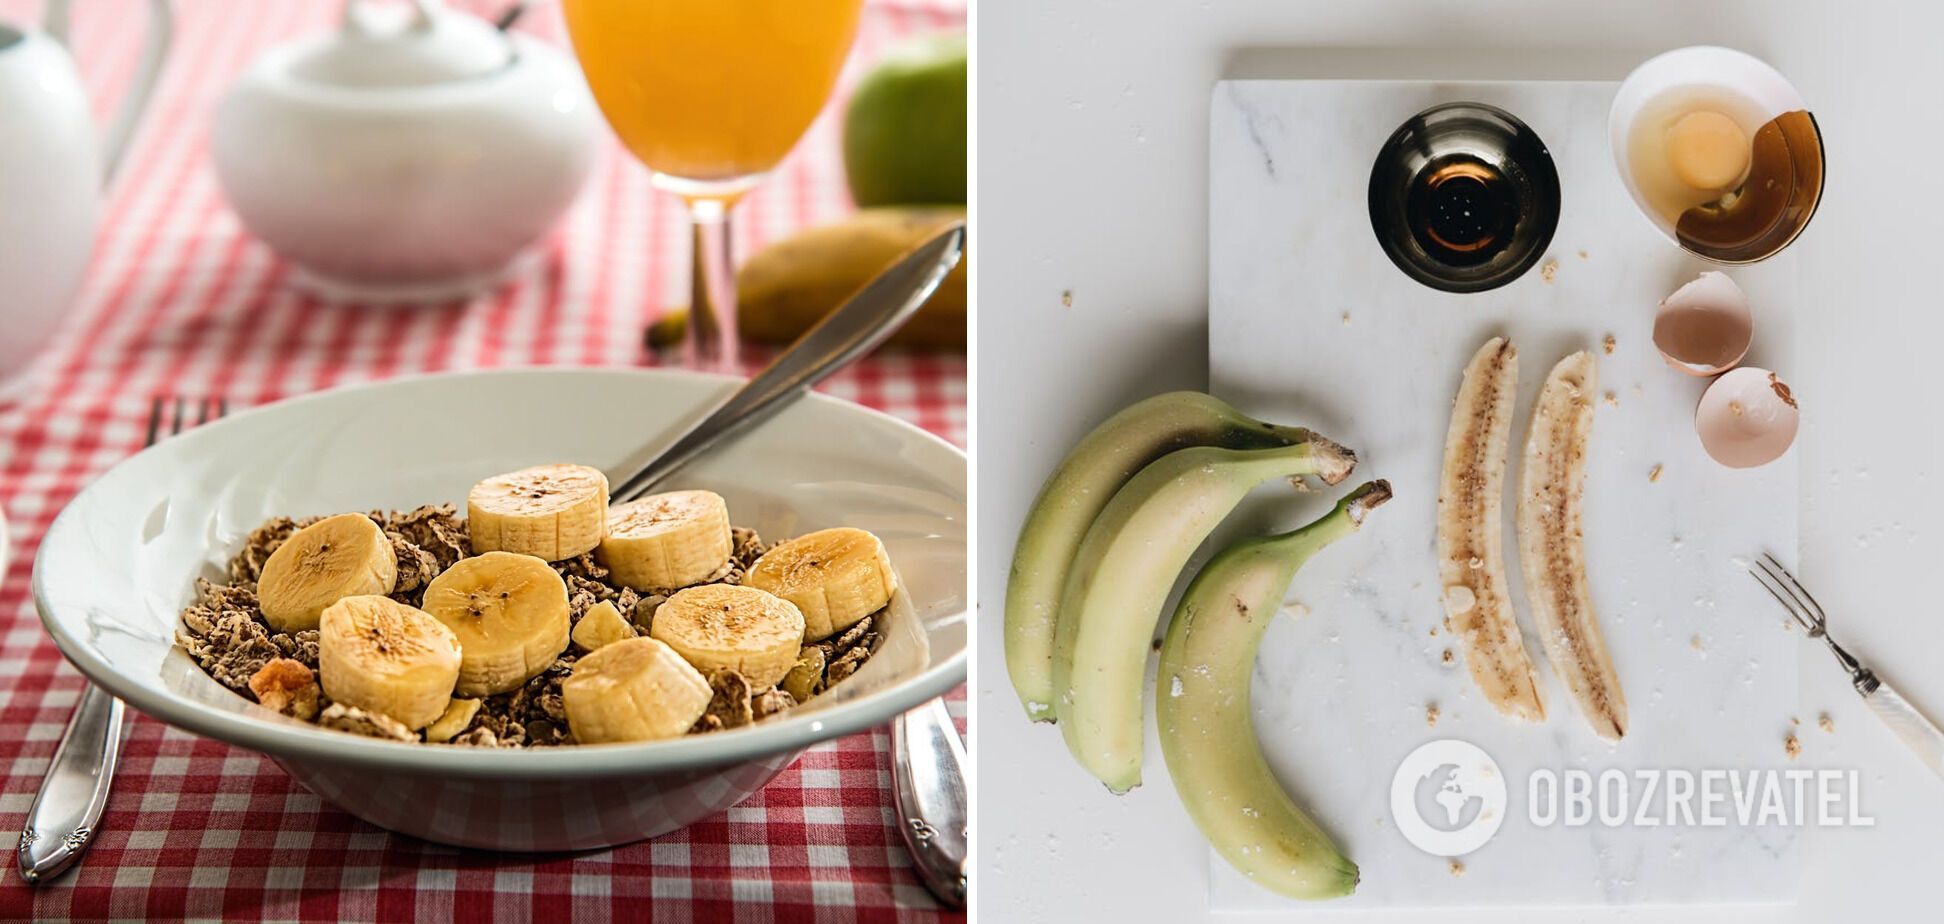 Бананы лучше есть на завтрак